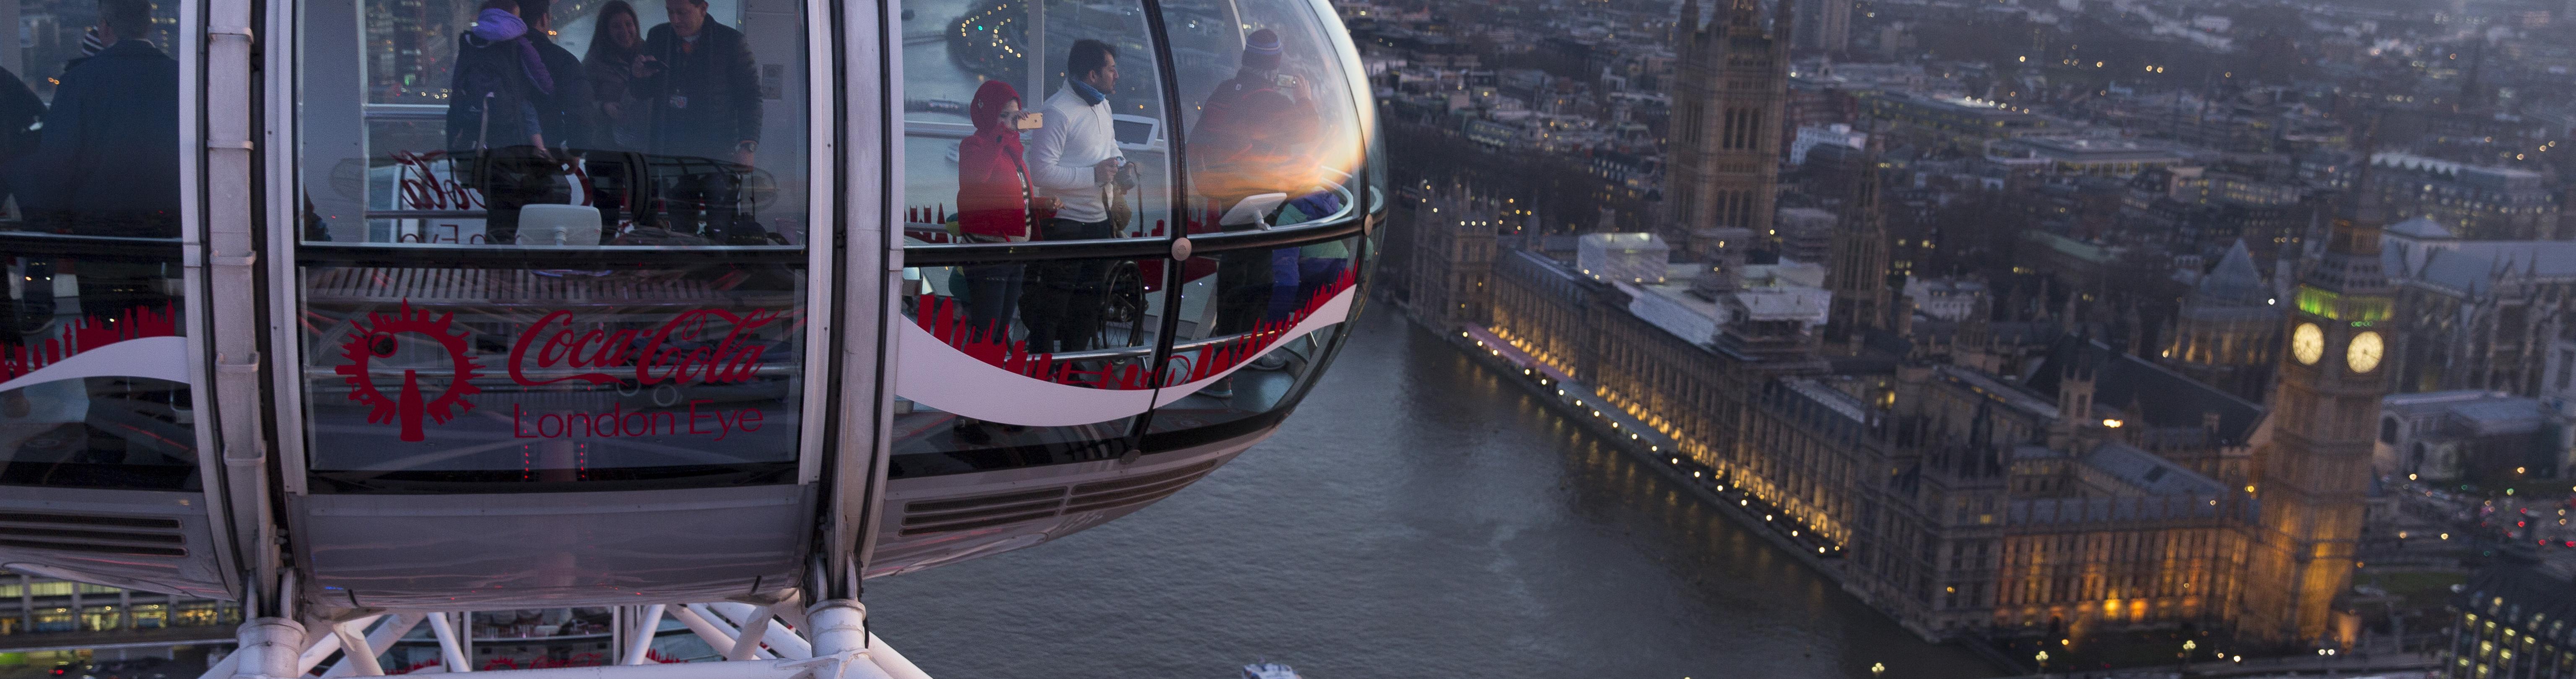 People in a Ferris wheel over London